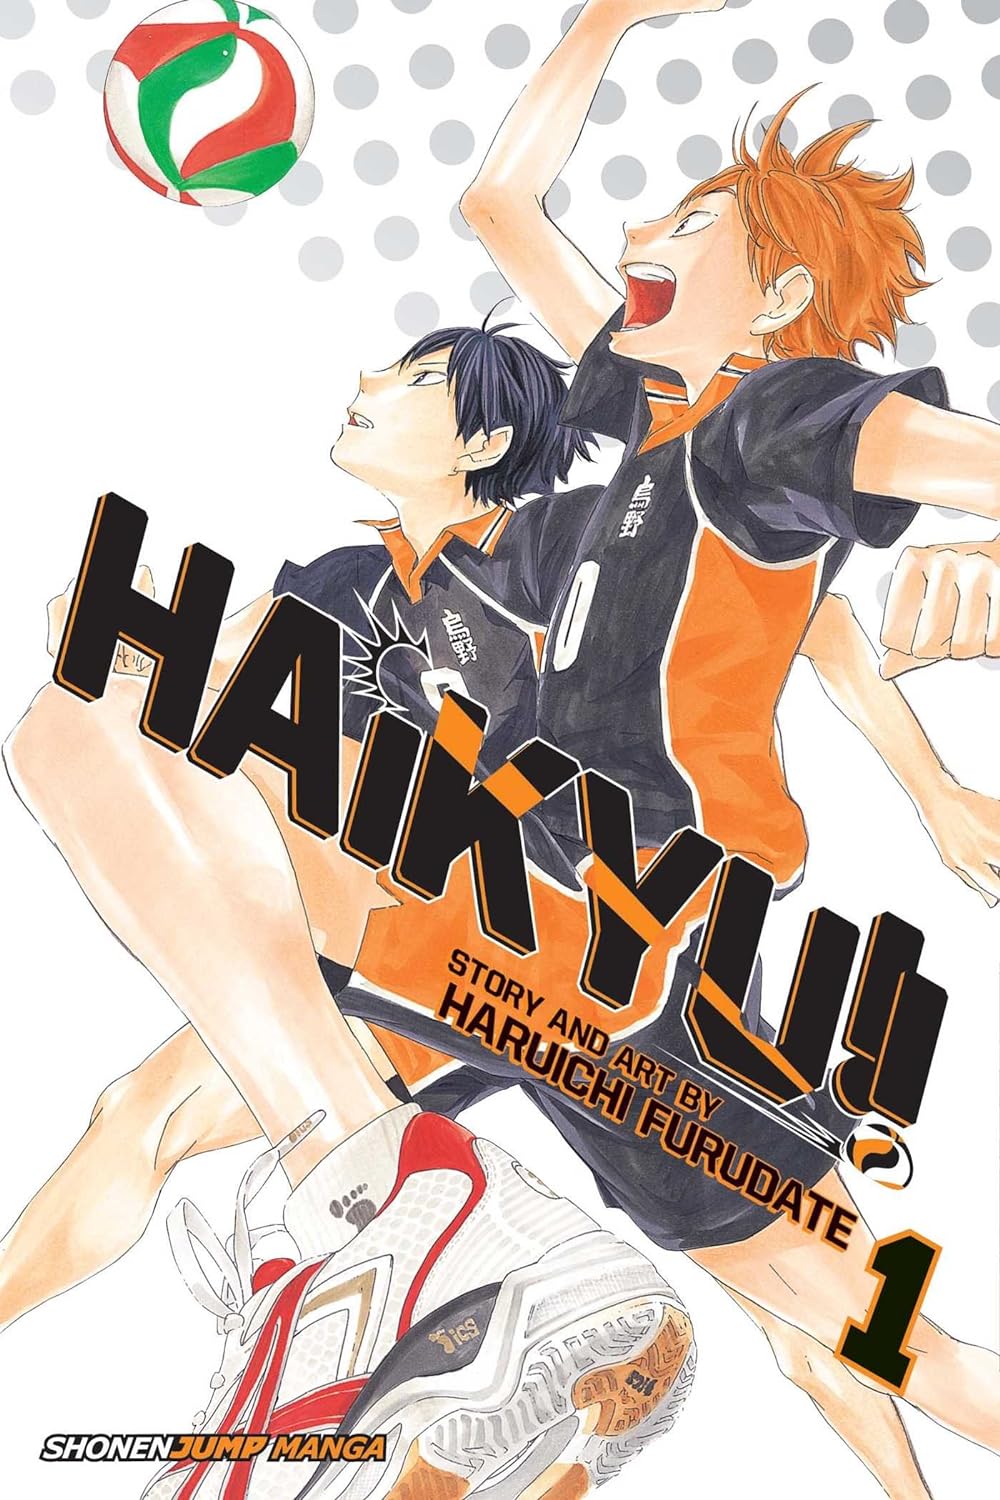 Manga of Haikyu!!